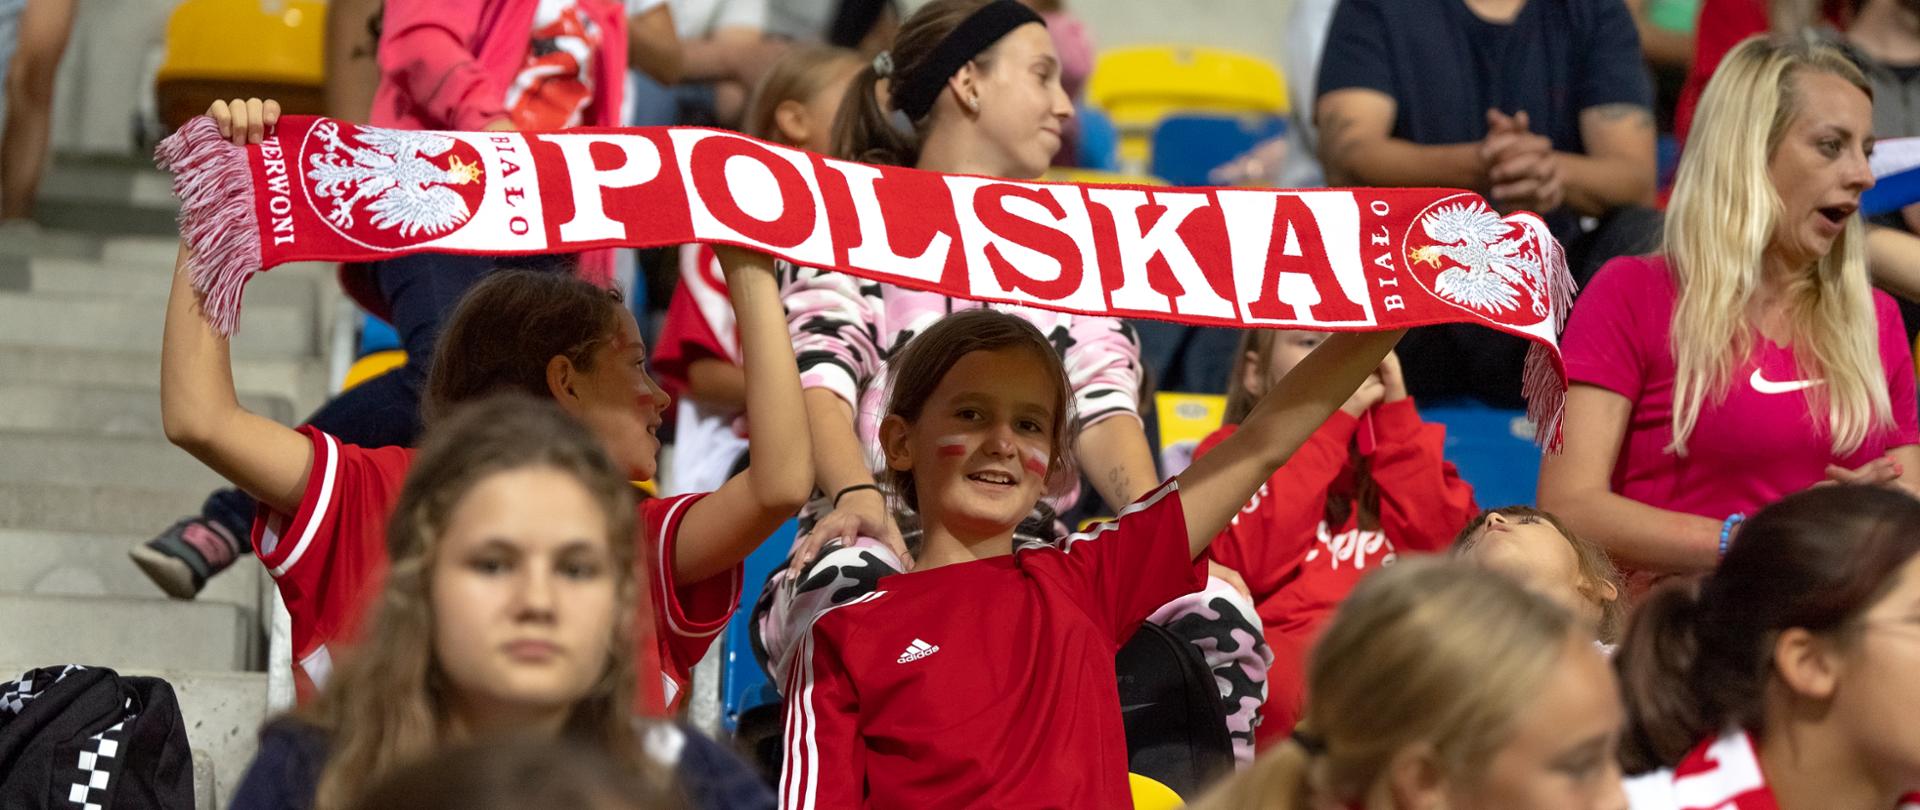 Na stadionowej trybunie siedzą dzieci, dwóch chłopców w czerwonych koszulkach trzyma rozpostarty biało-czerwony szalik z napisem Polska.
